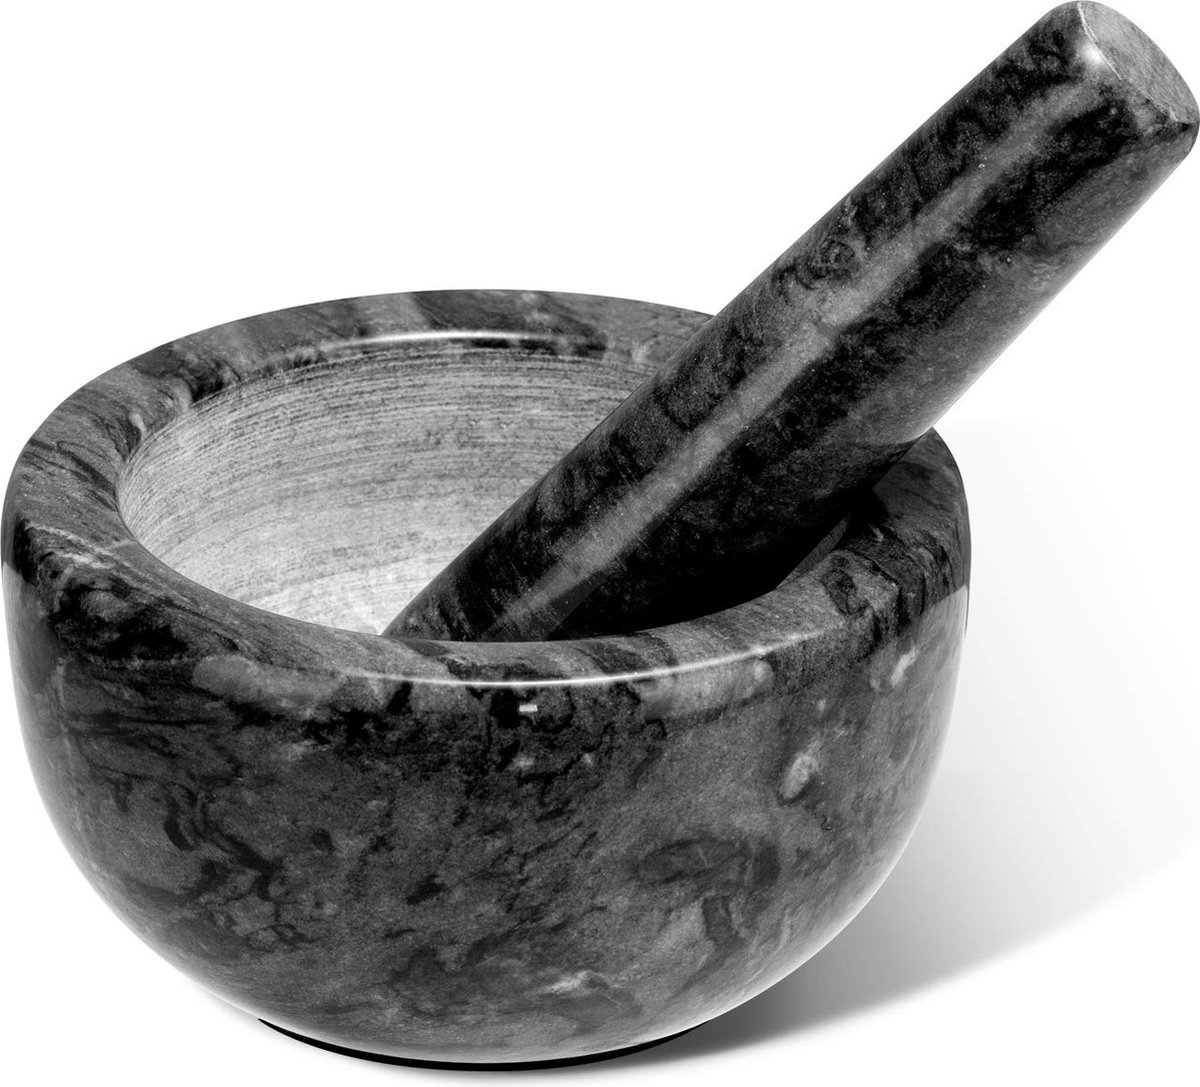 Marmeren vijzel en stamper set: natuurlijke marmeren keukenmolen klein formaat met 10 cm diameter - Handmatige kruidenmolen kruidenmolen pillentrekker met stamper in zwart